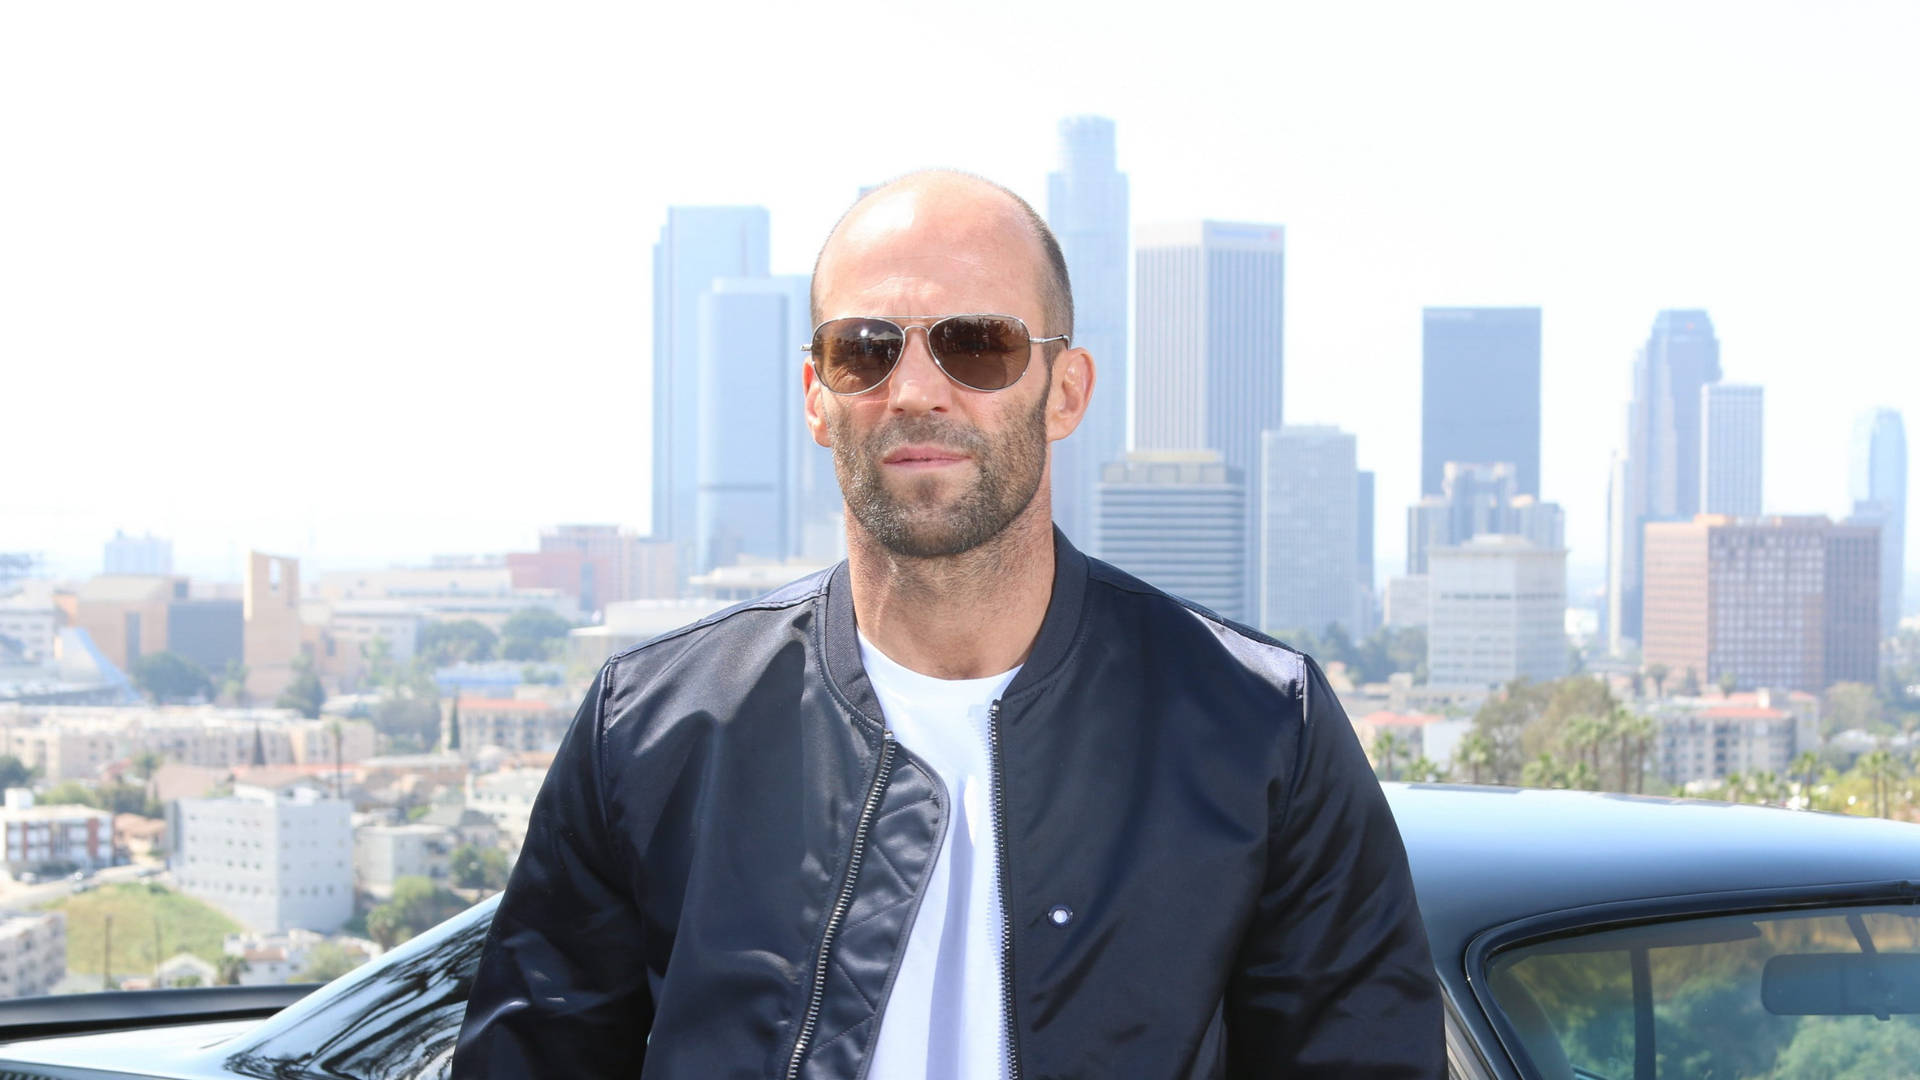 Jason Statham With Sunglasses Background